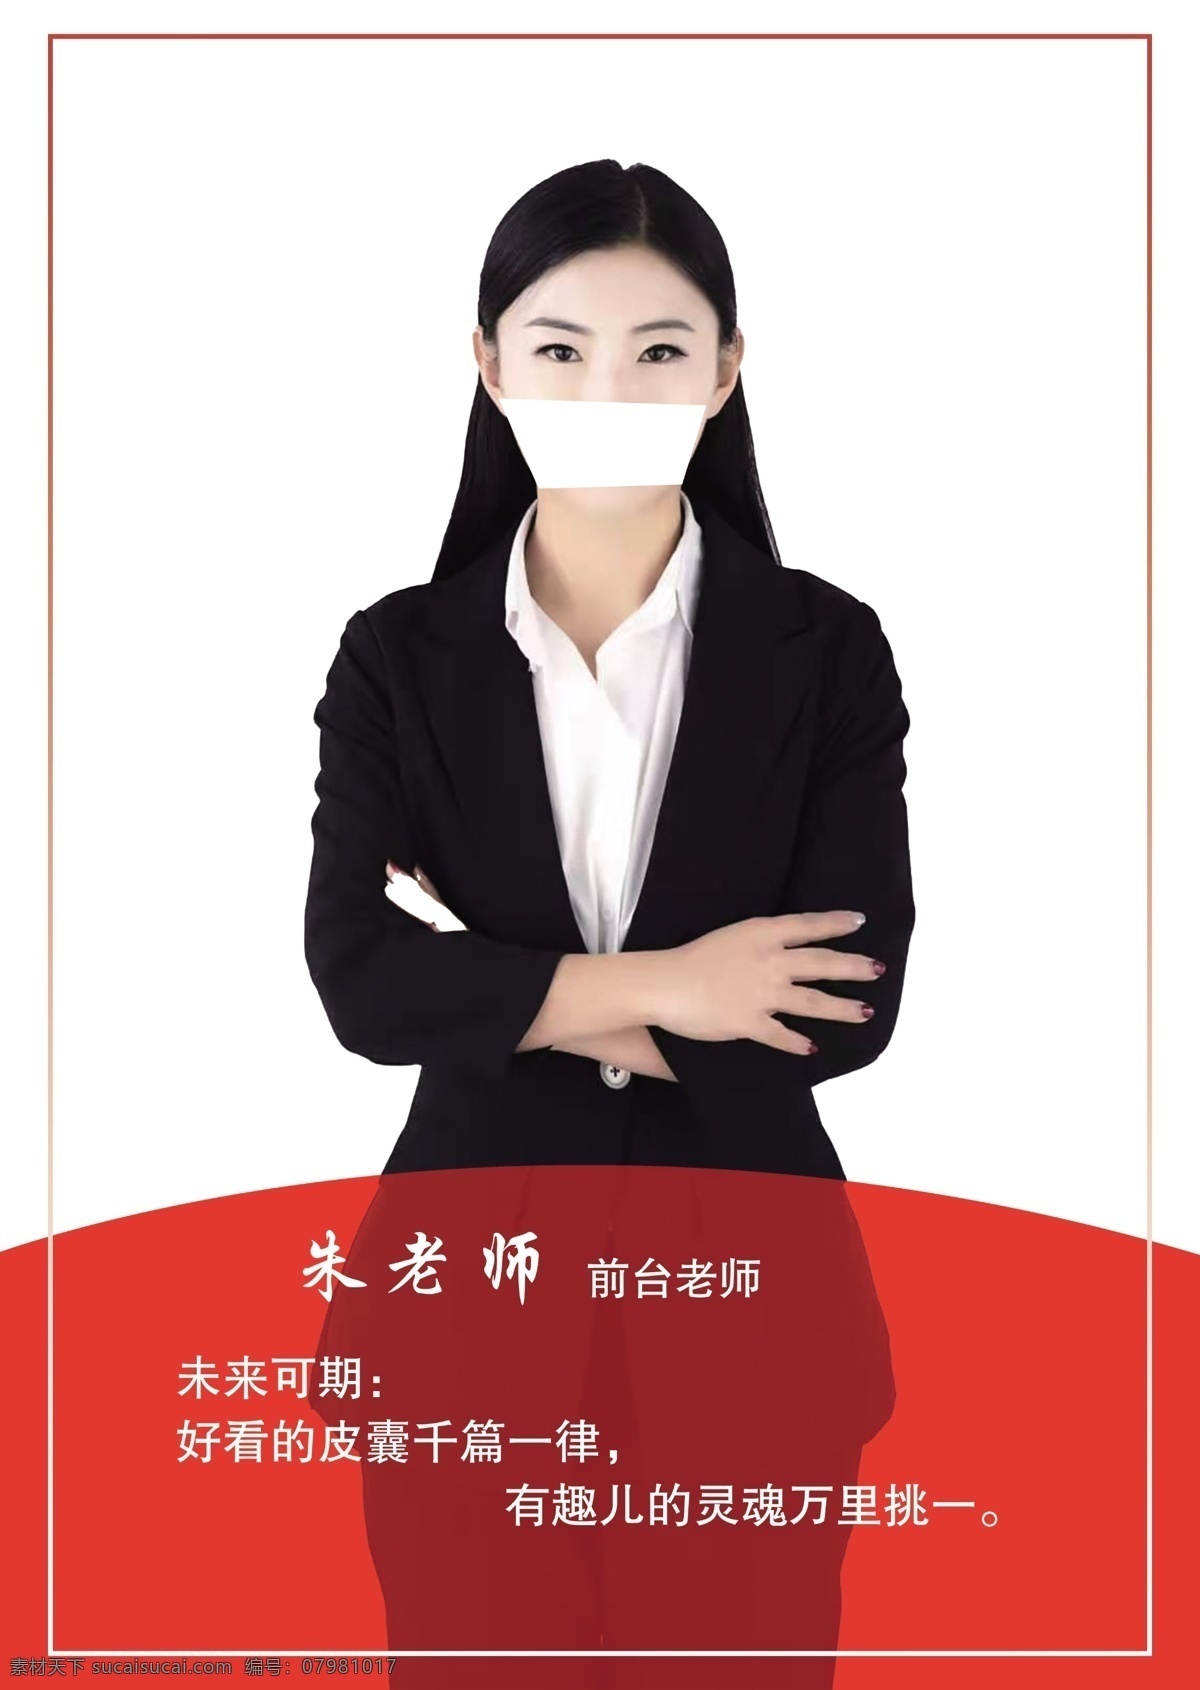 企业 人物 宣传海报 人物介绍展架 黑金 活动 创业 海报 中国风 名片卡片